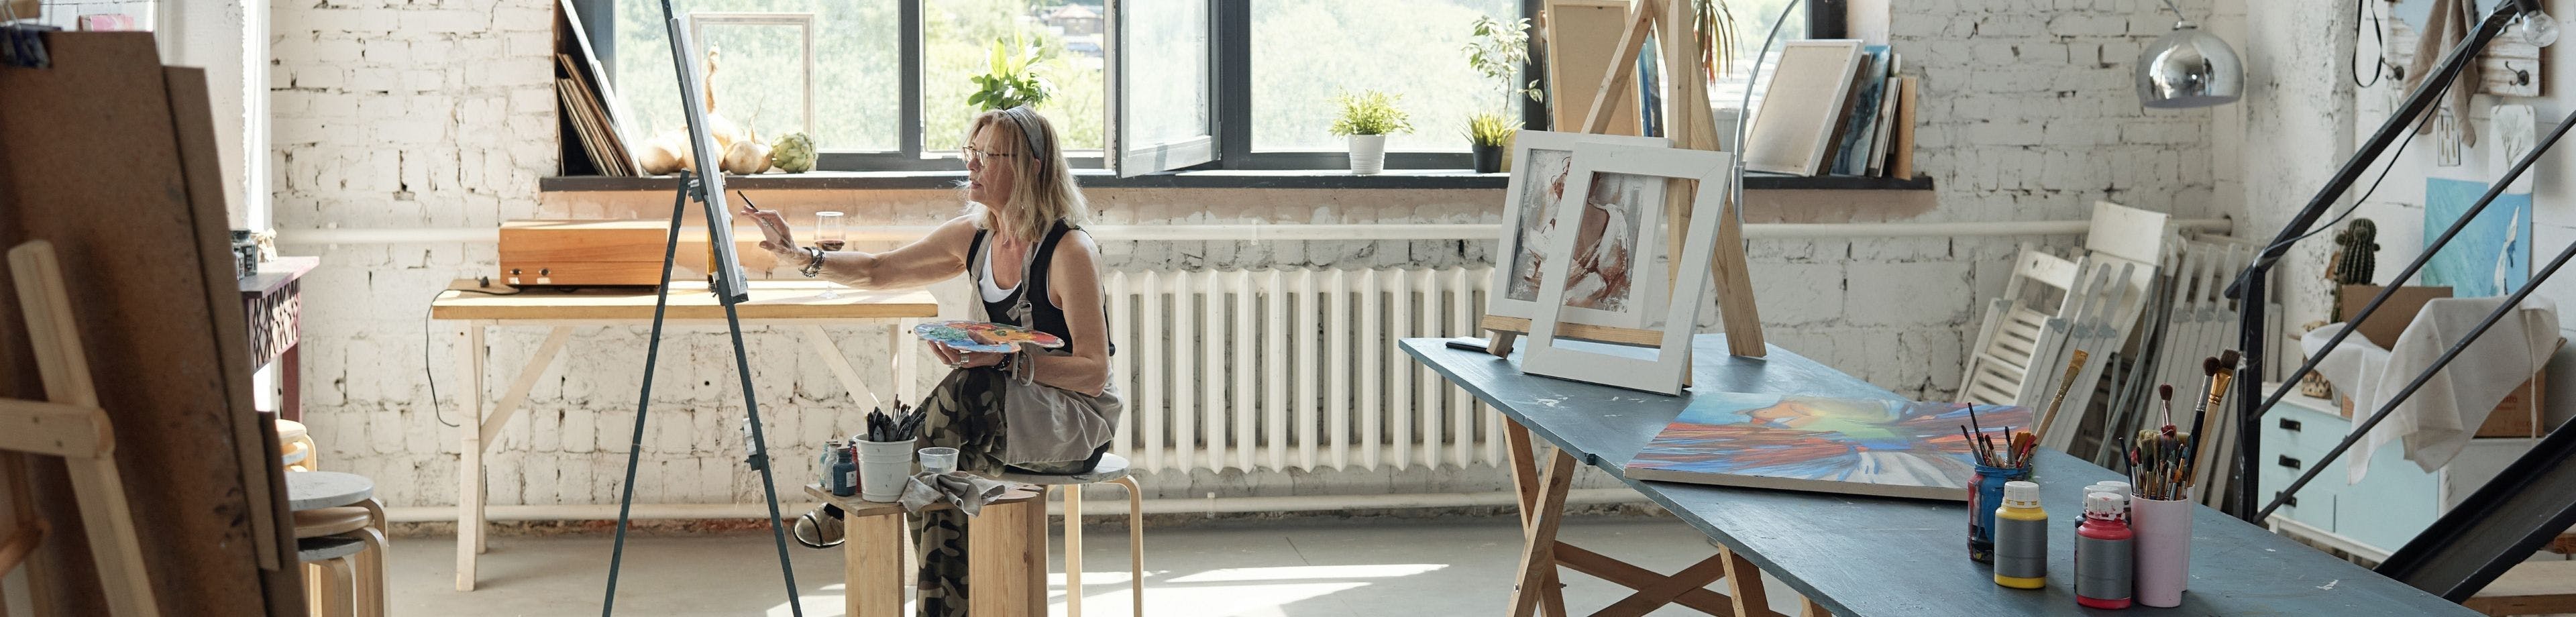 Vrouw zit te schilderen in een grote, lichte ruimte